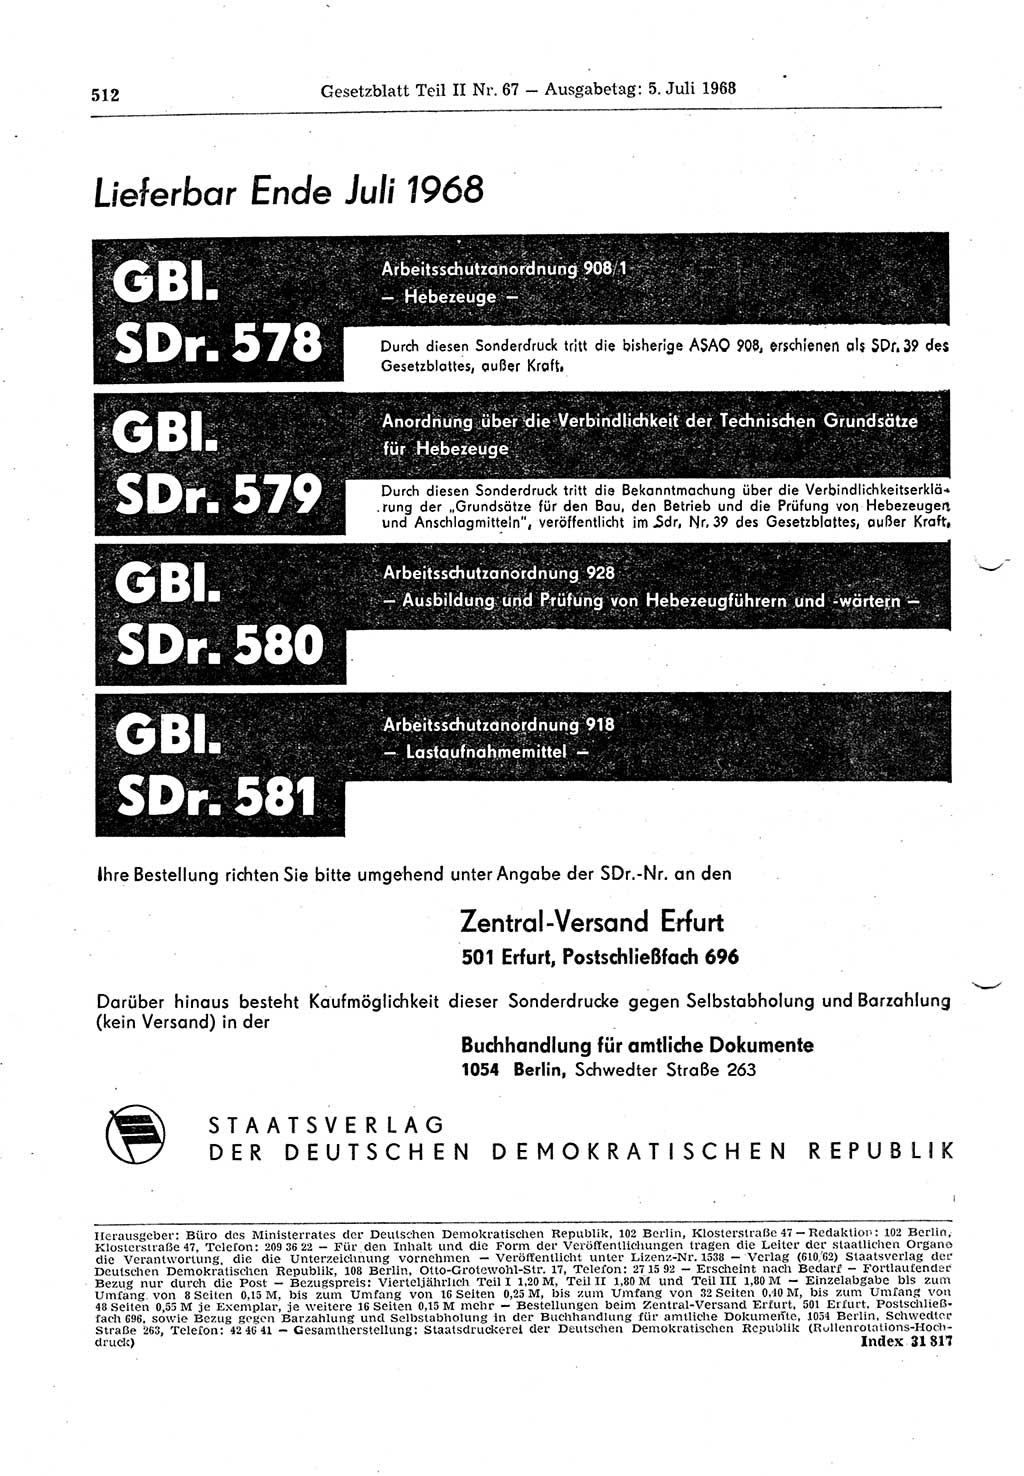 Gesetzblatt (GBl.) der Deutschen Demokratischen Republik (DDR) Teil ⅠⅠ 1968, Seite 512 (GBl. DDR ⅠⅠ 1968, S. 512)